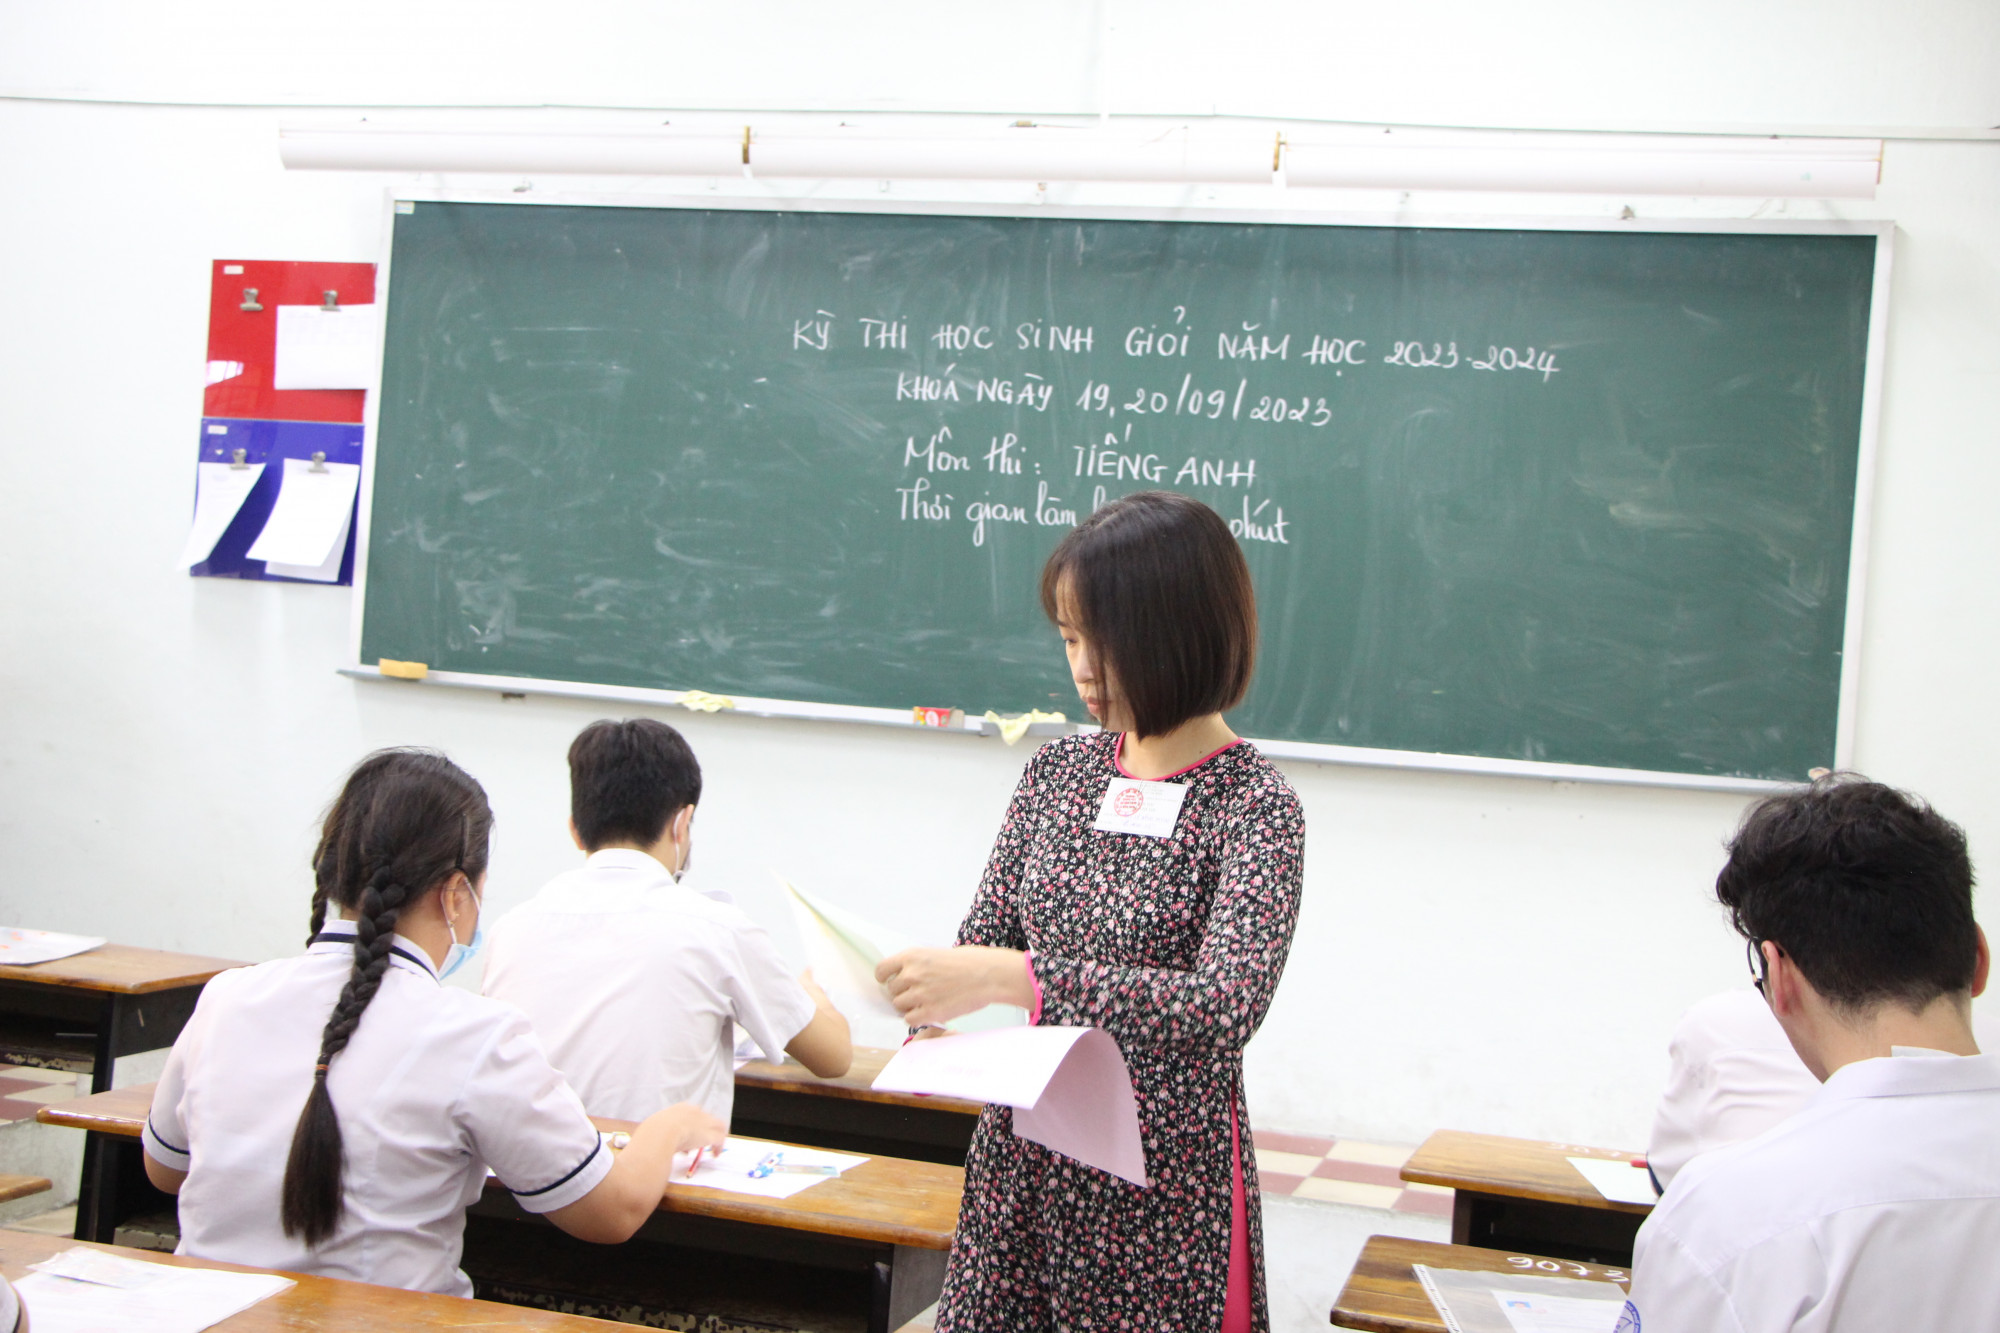 Học sinh tham gia dự thi môn tiếng Anh trong kỳ thi học sinh giỏi THPT sáng 19/9 tại Hội đồng thi Trường THPT chuyên Lê Hồng Phong